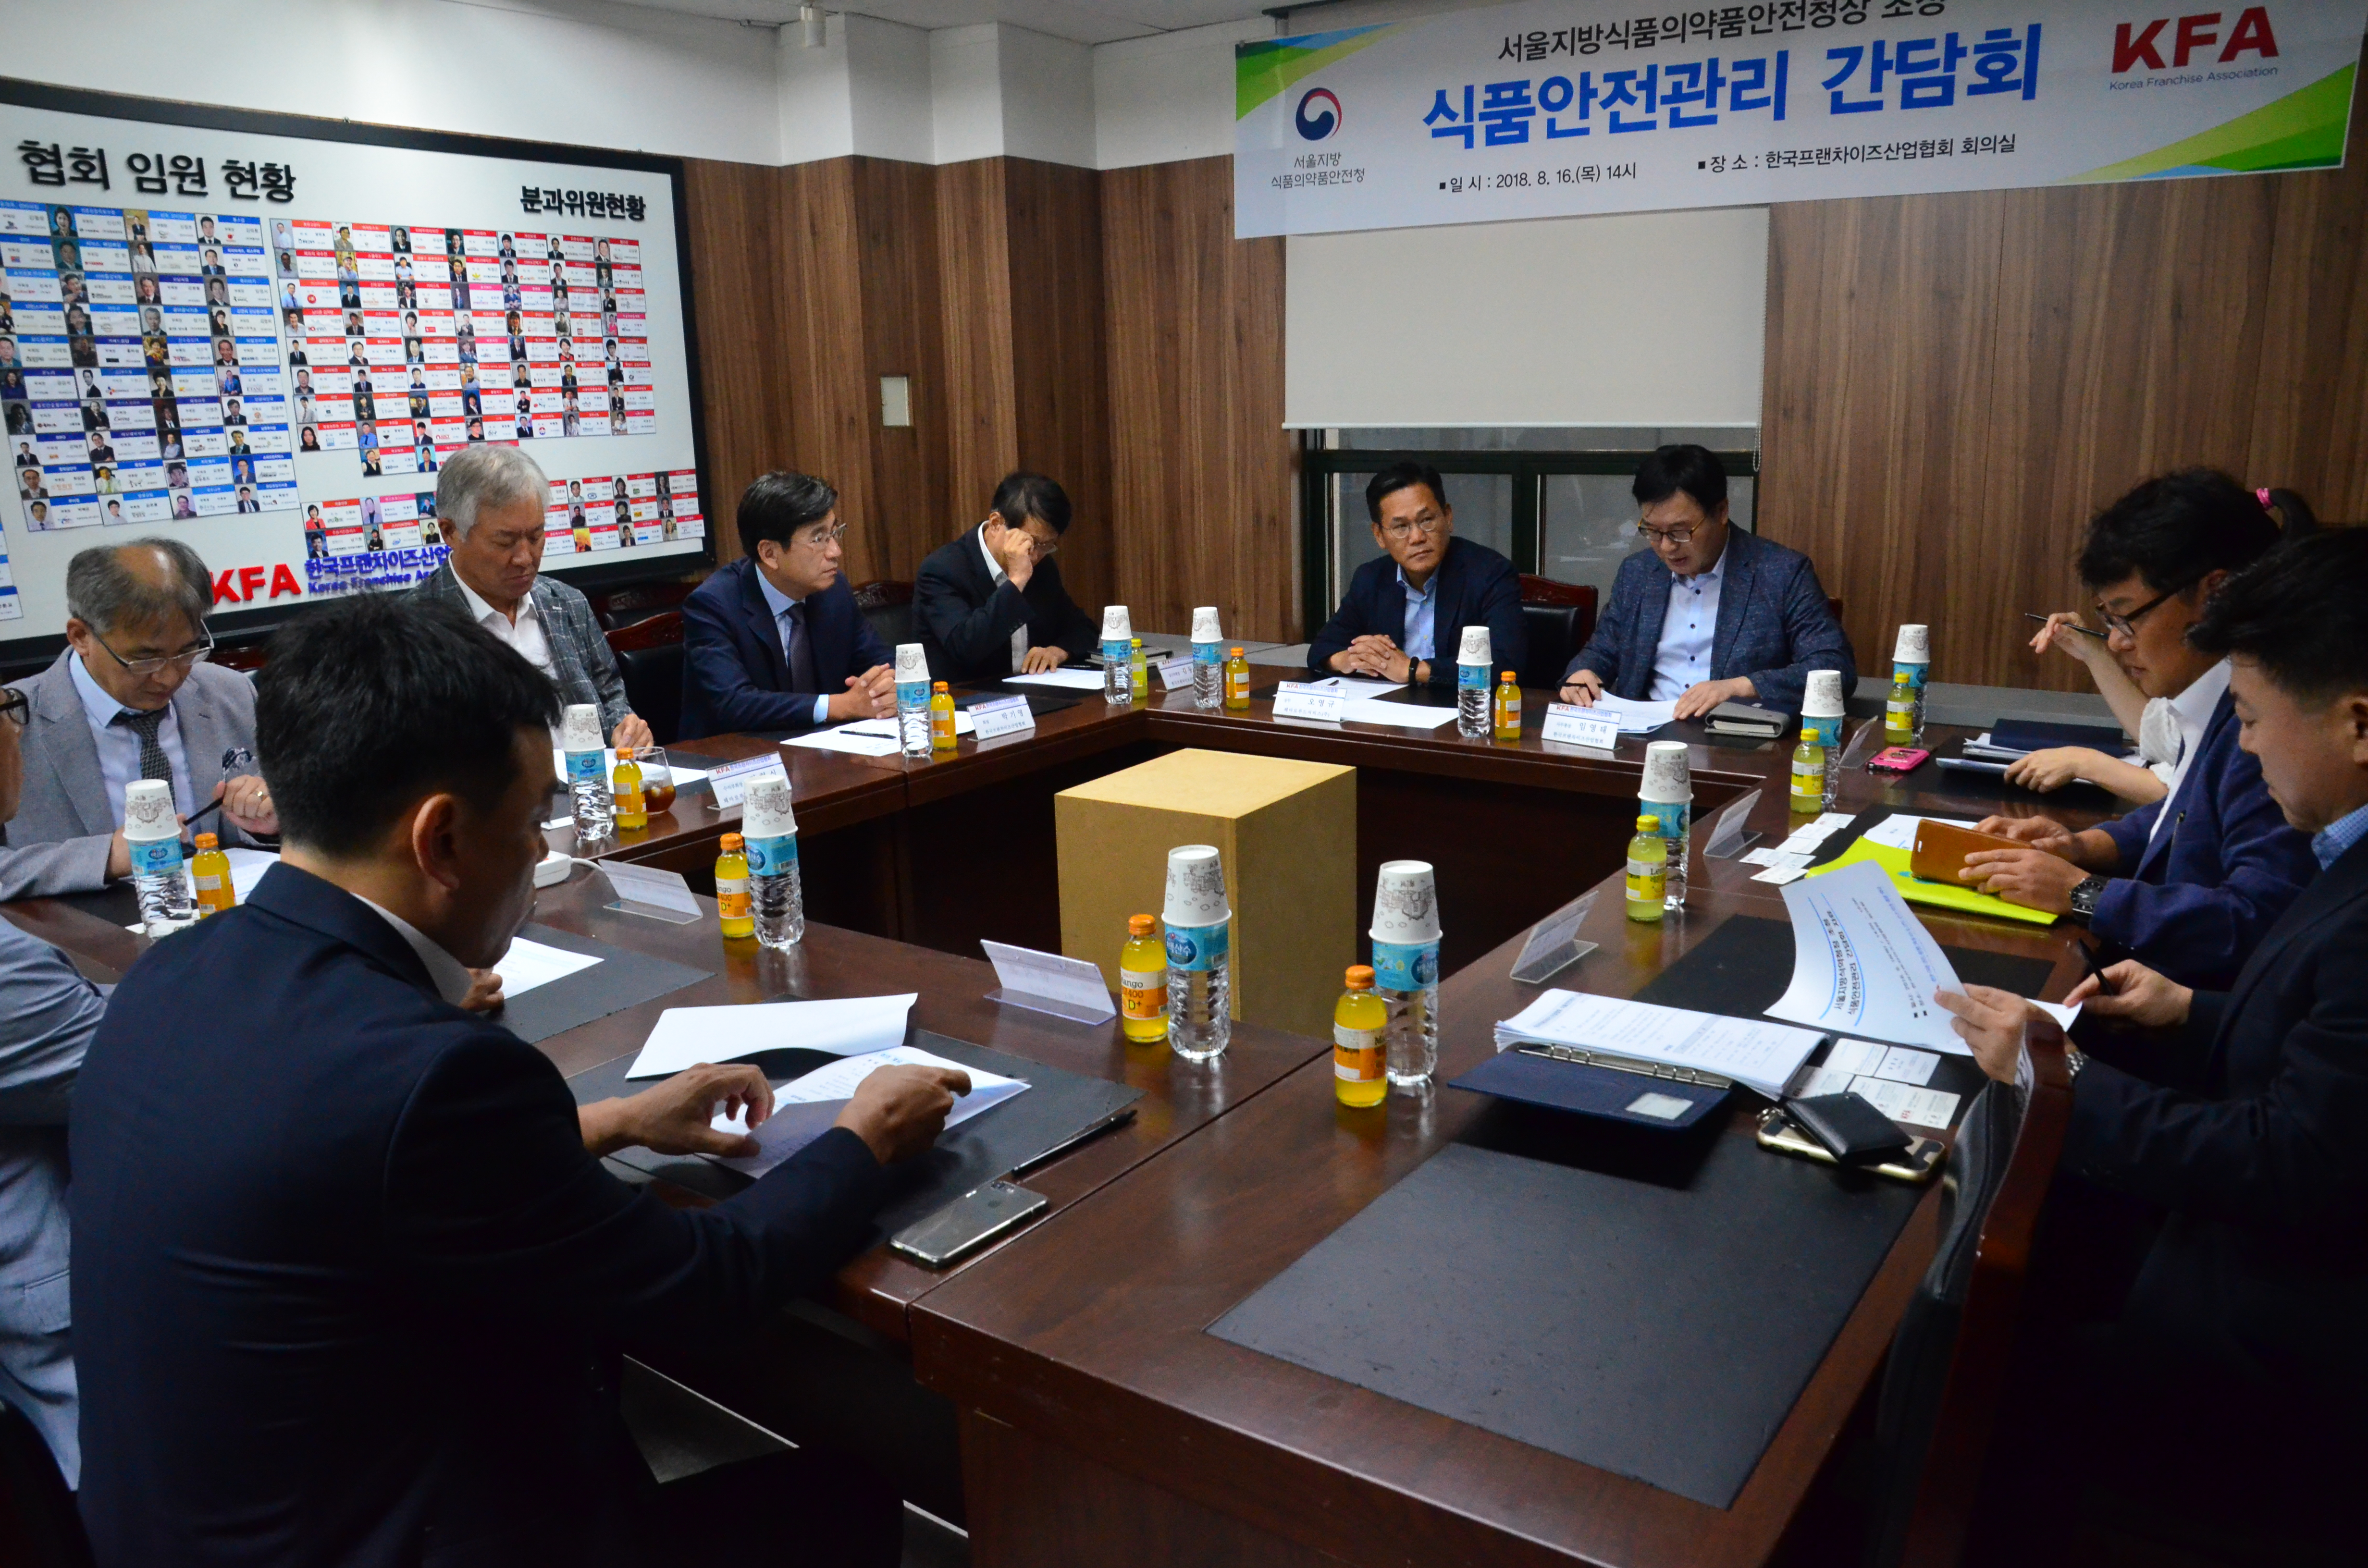 서울청, 한국프랜차이즈산업협회와 식품안전관리 간담회 개최